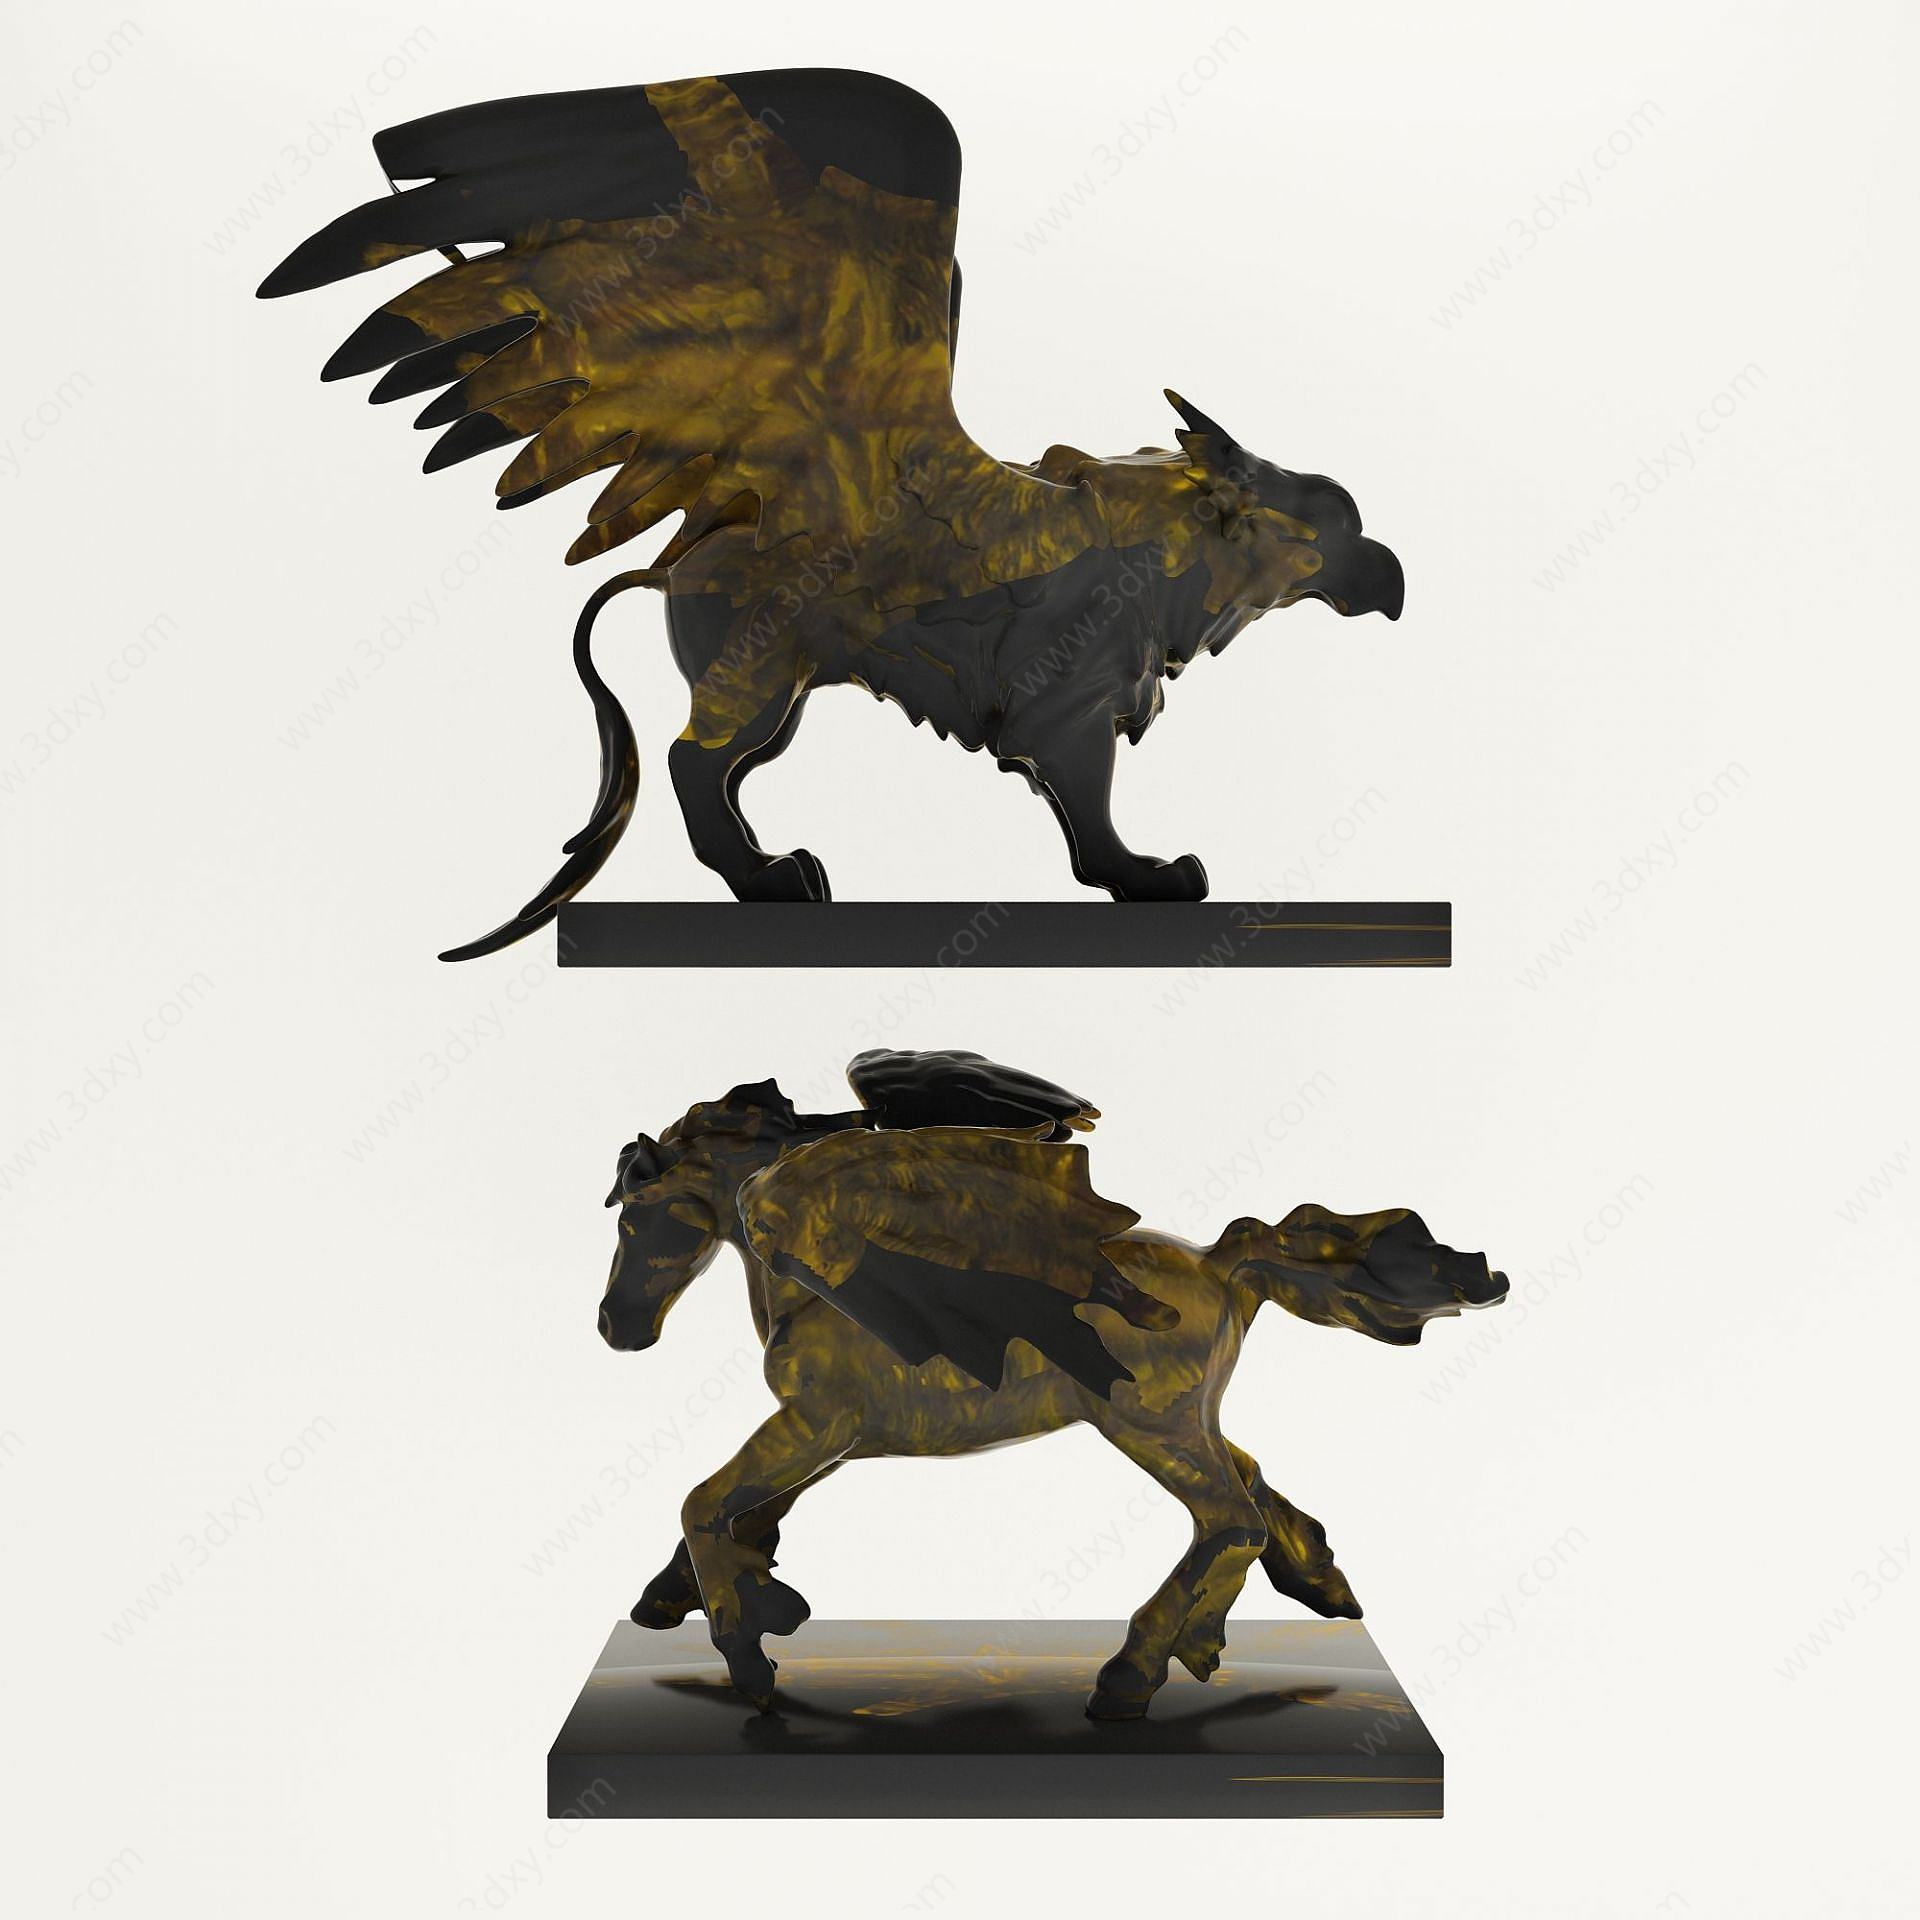 神兽铜制雕塑摆件陈设品3D模型